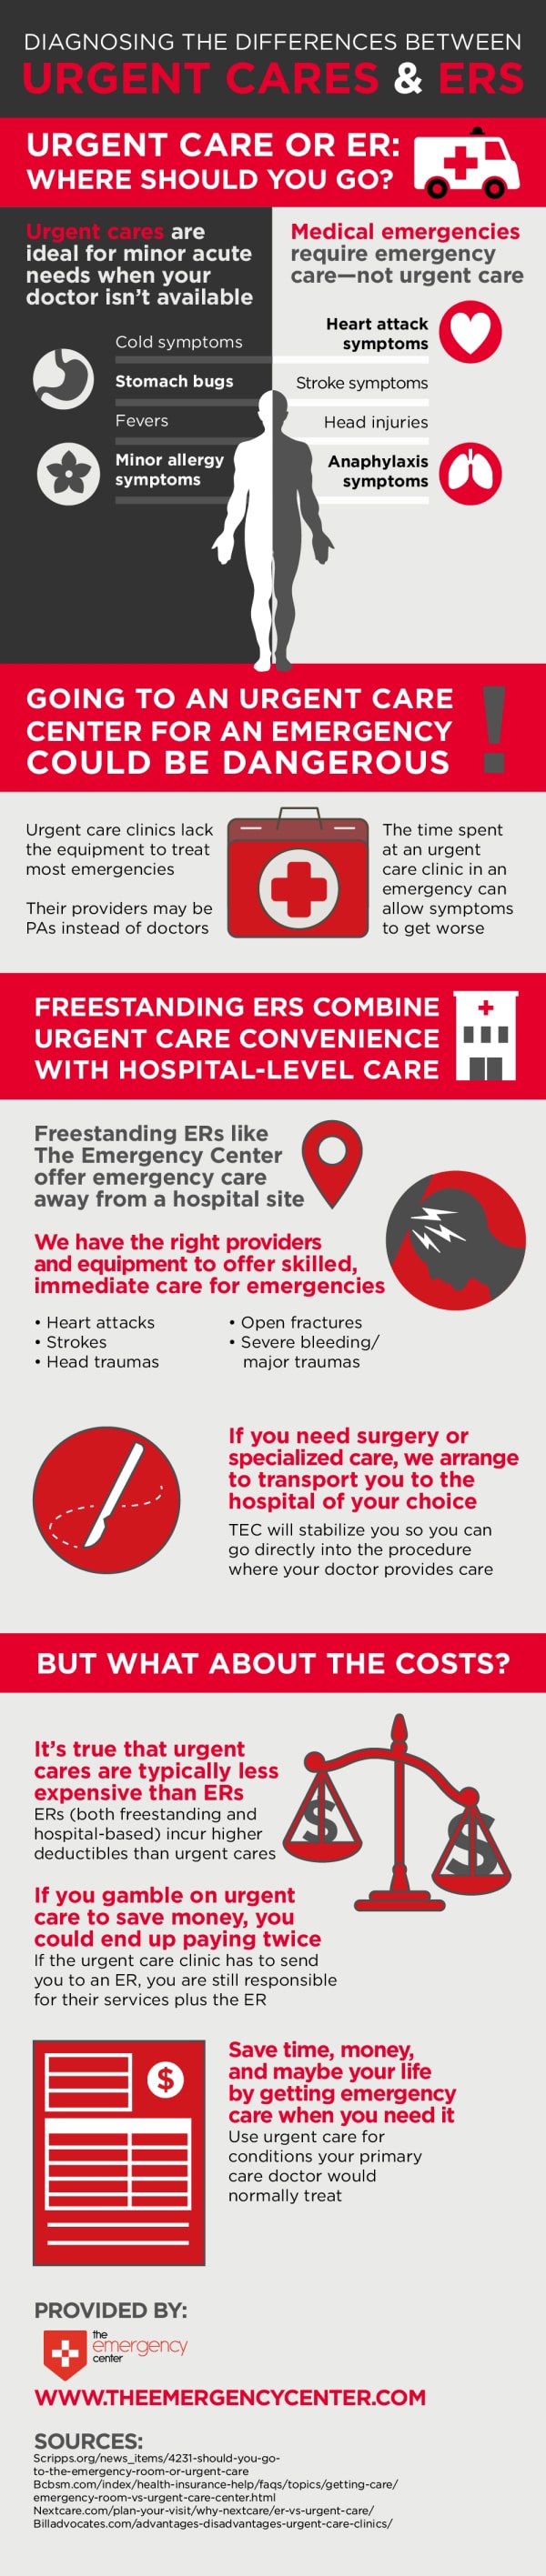 Urgent Care Versus ER Visit